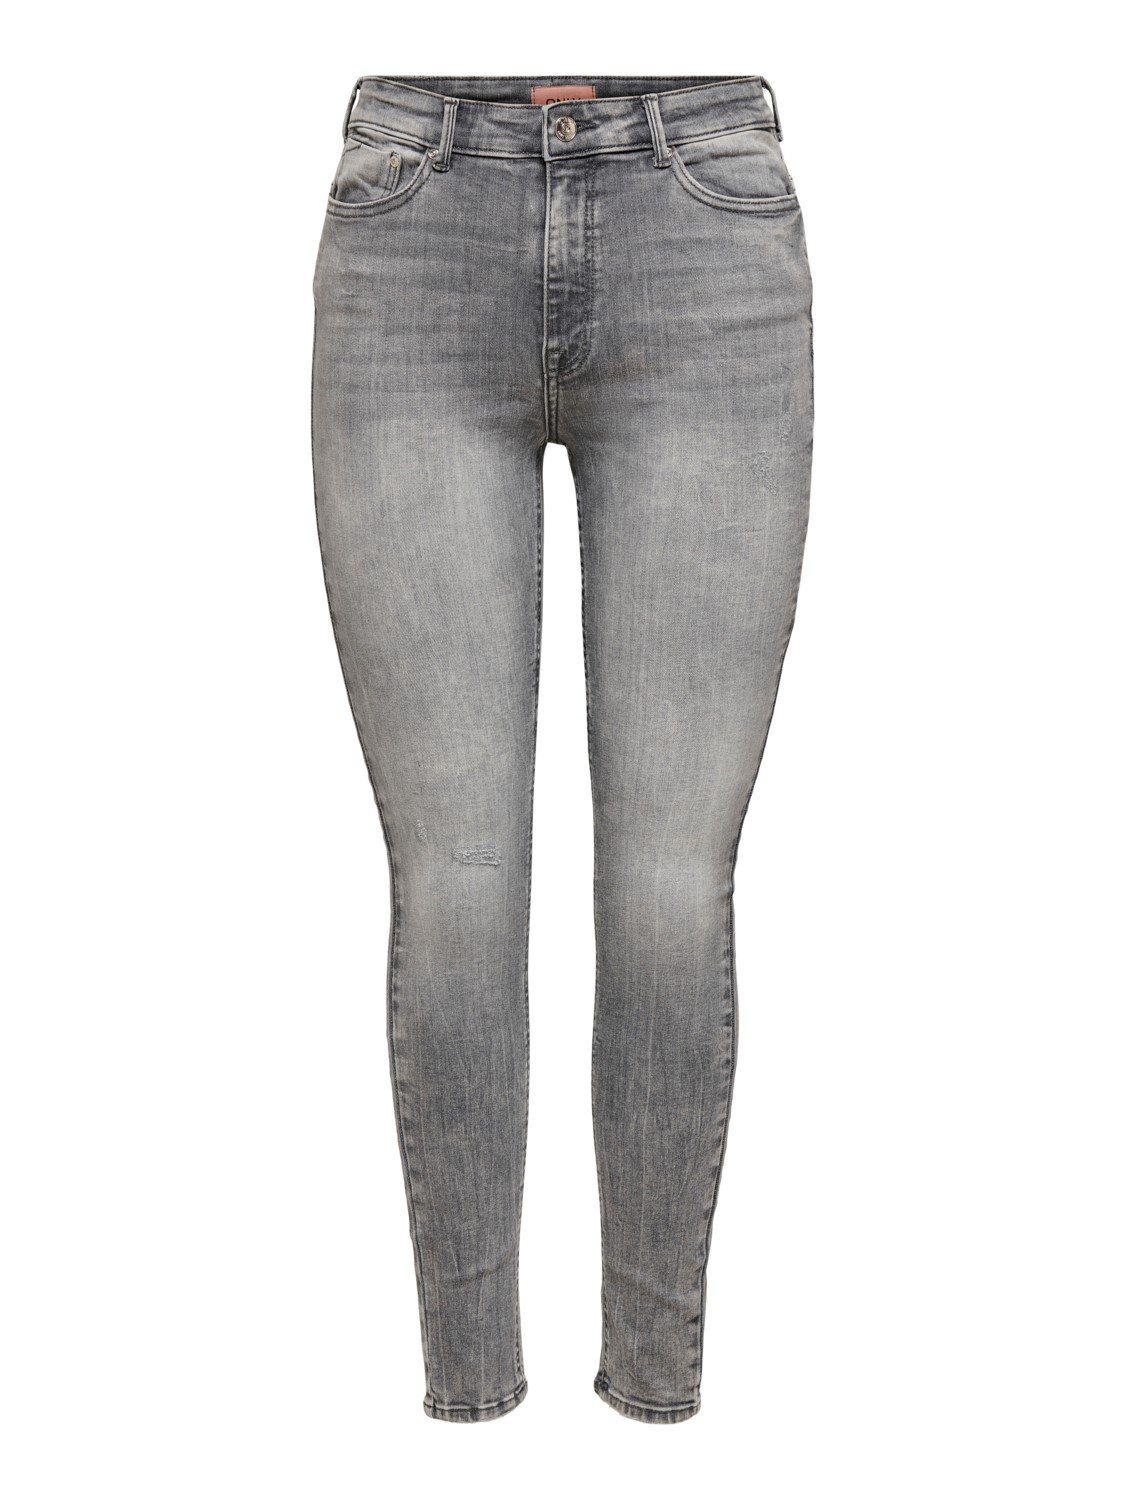 Graue High Waist Jeans online kaufen | OTTO